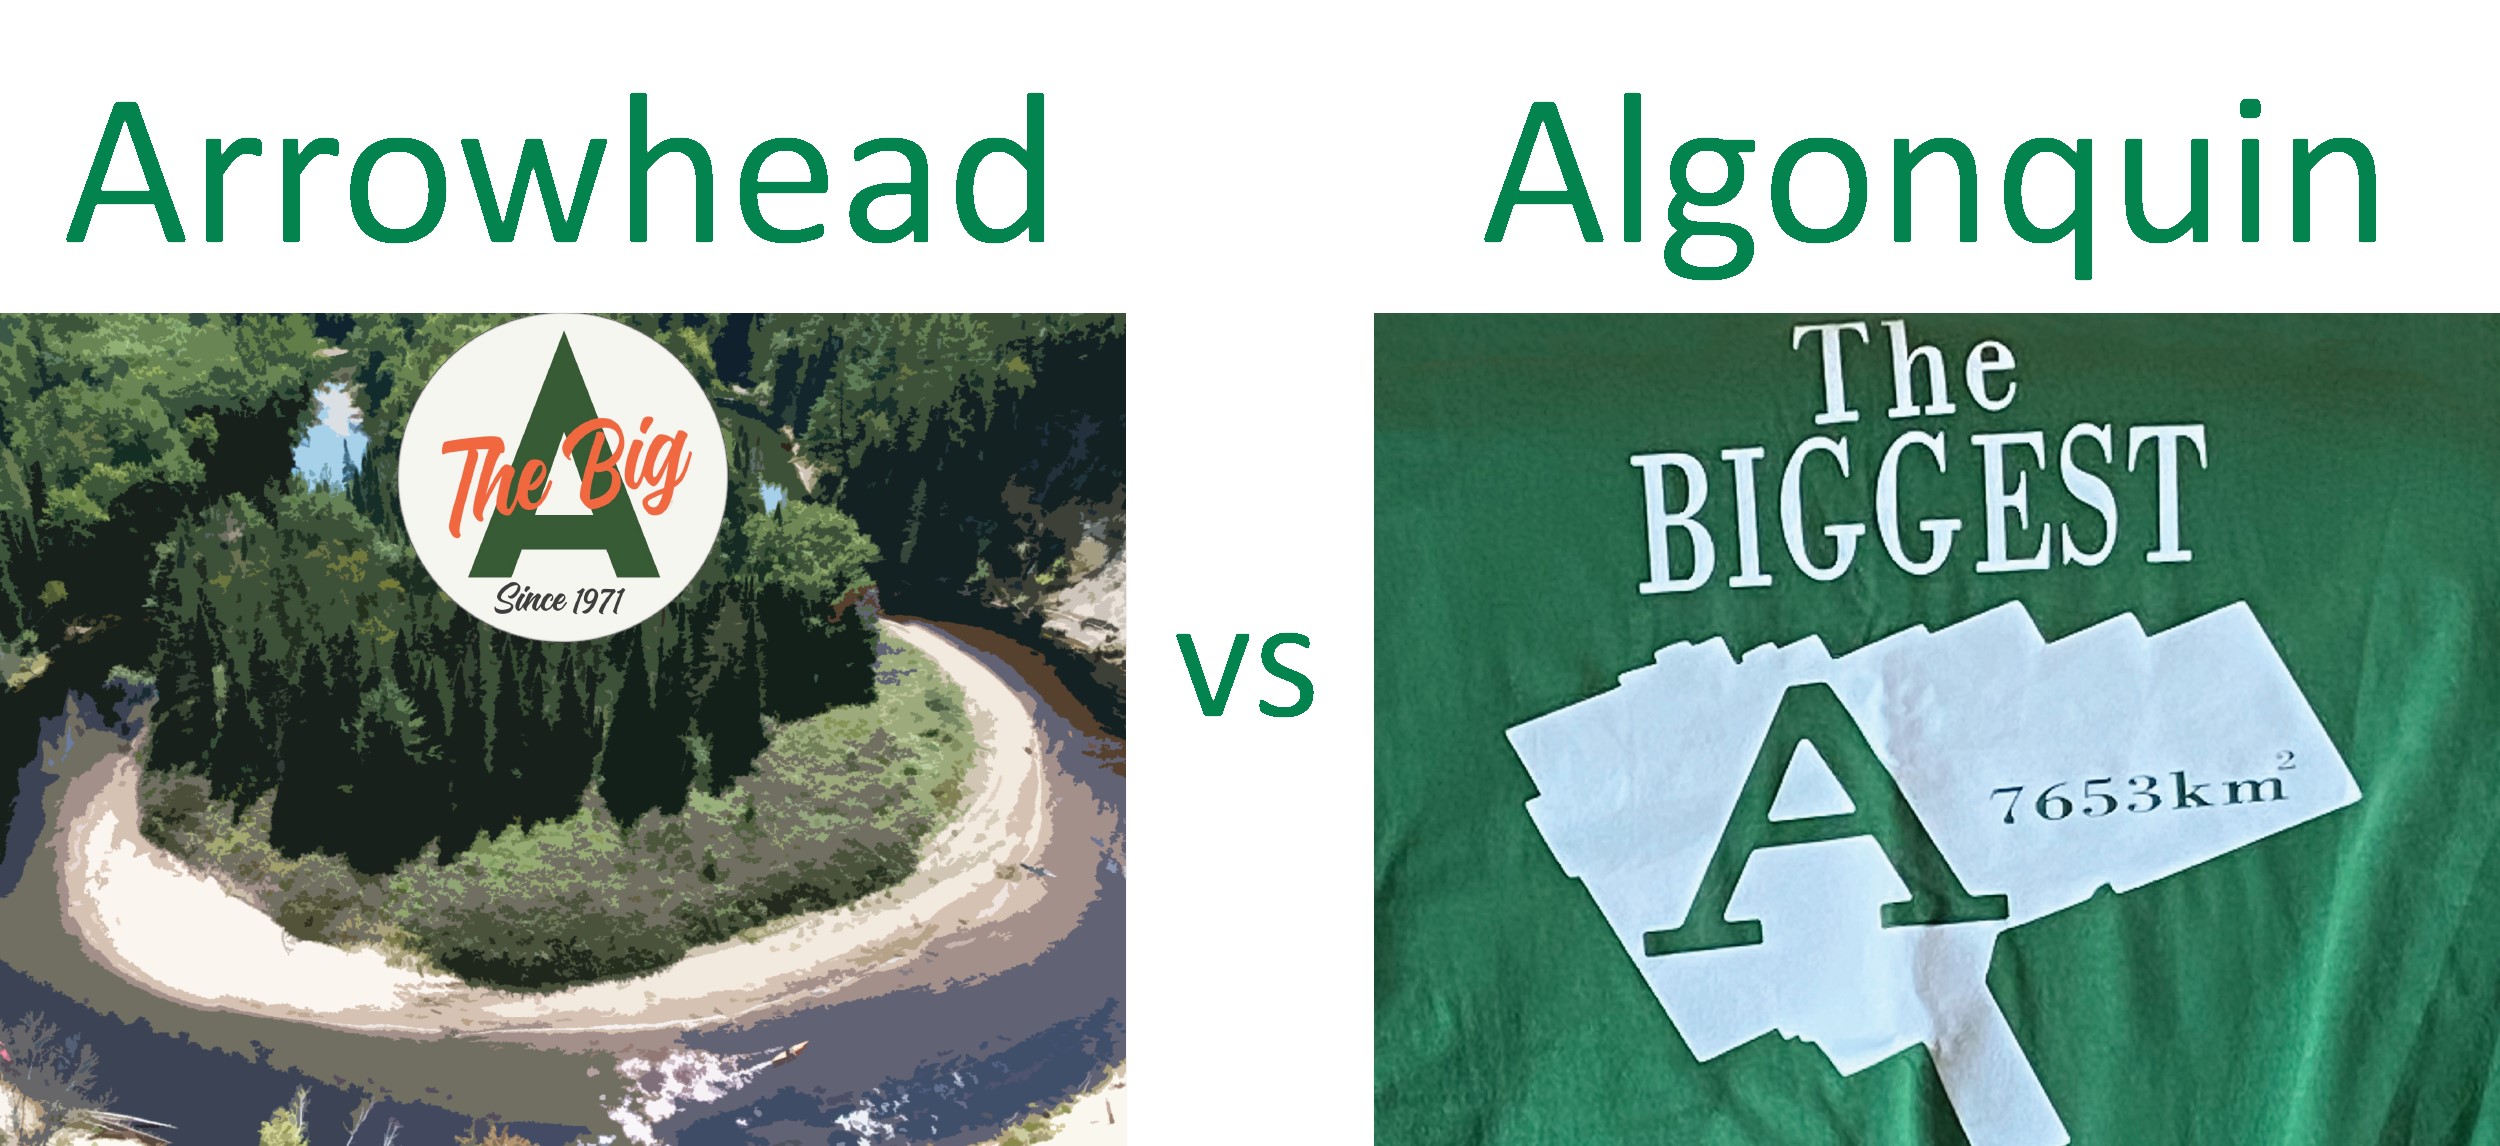 Deux dessins côte à côte, chacun prétendant être « The Big A » (Le Grand A). À gauche, un dessin du parc provincial Arrowhead. À droite, un dessin du parc provincial Algonquin.